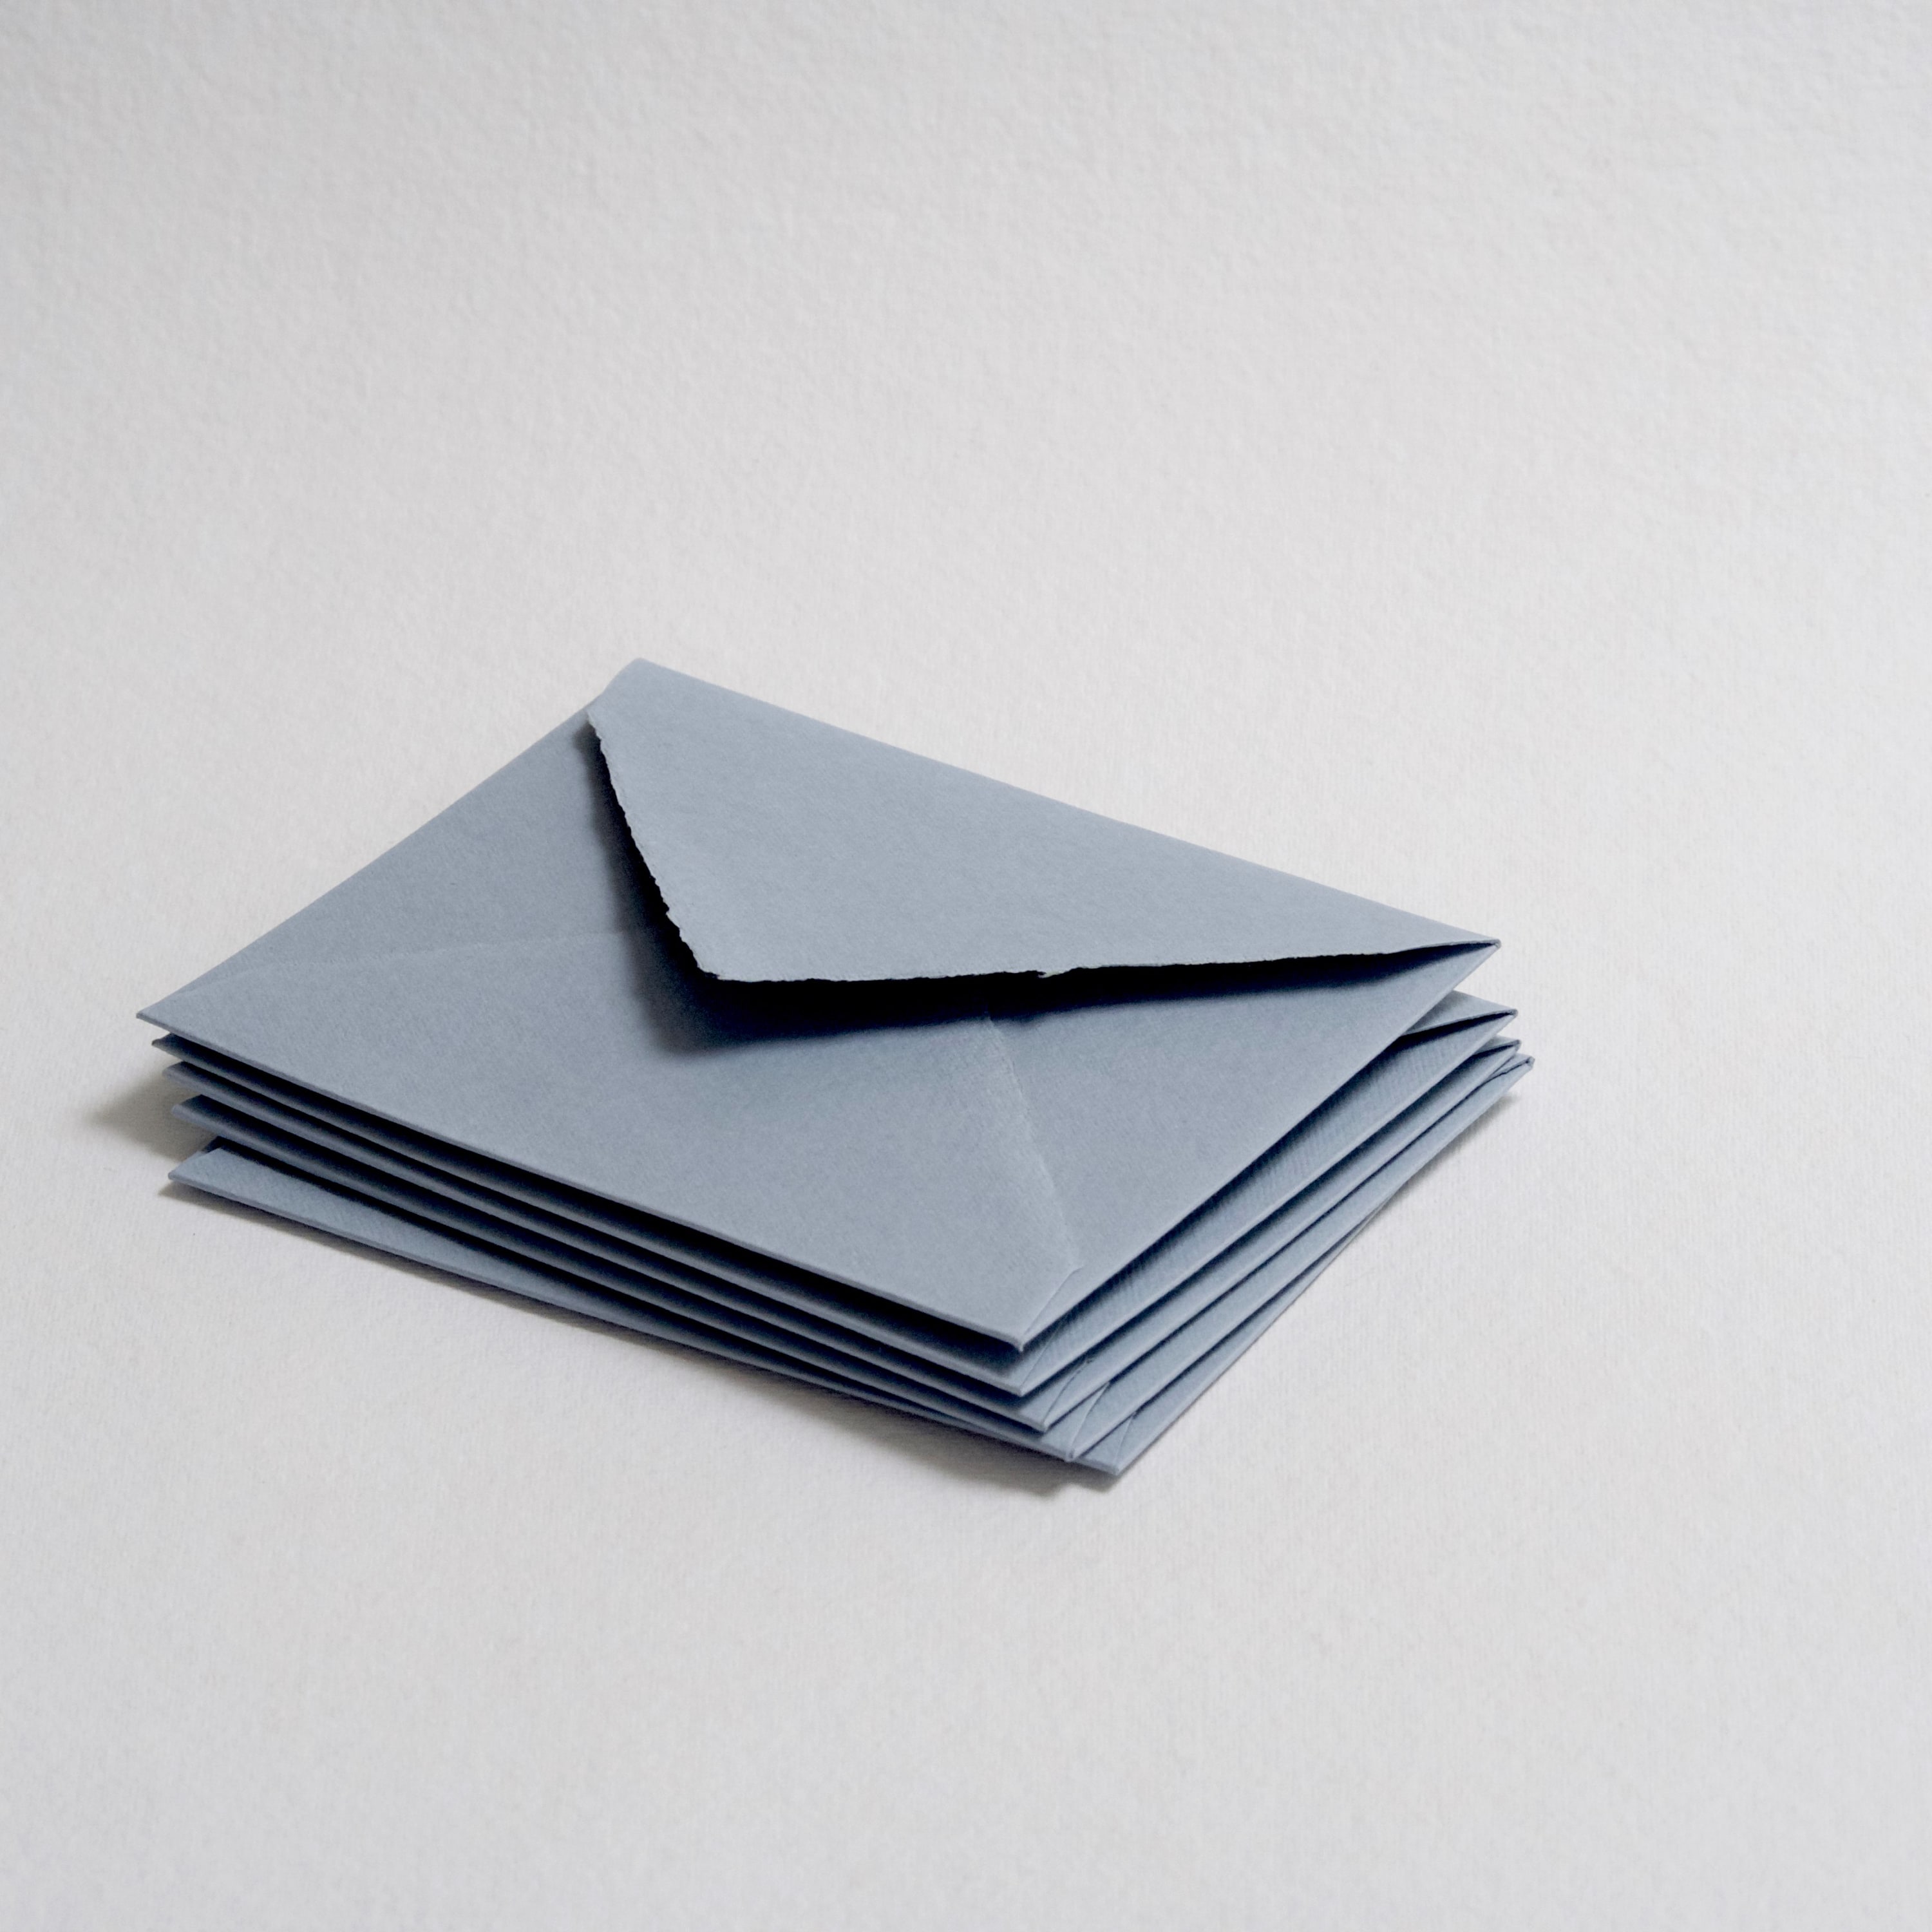 Dusty Blue Paper & Envelopes